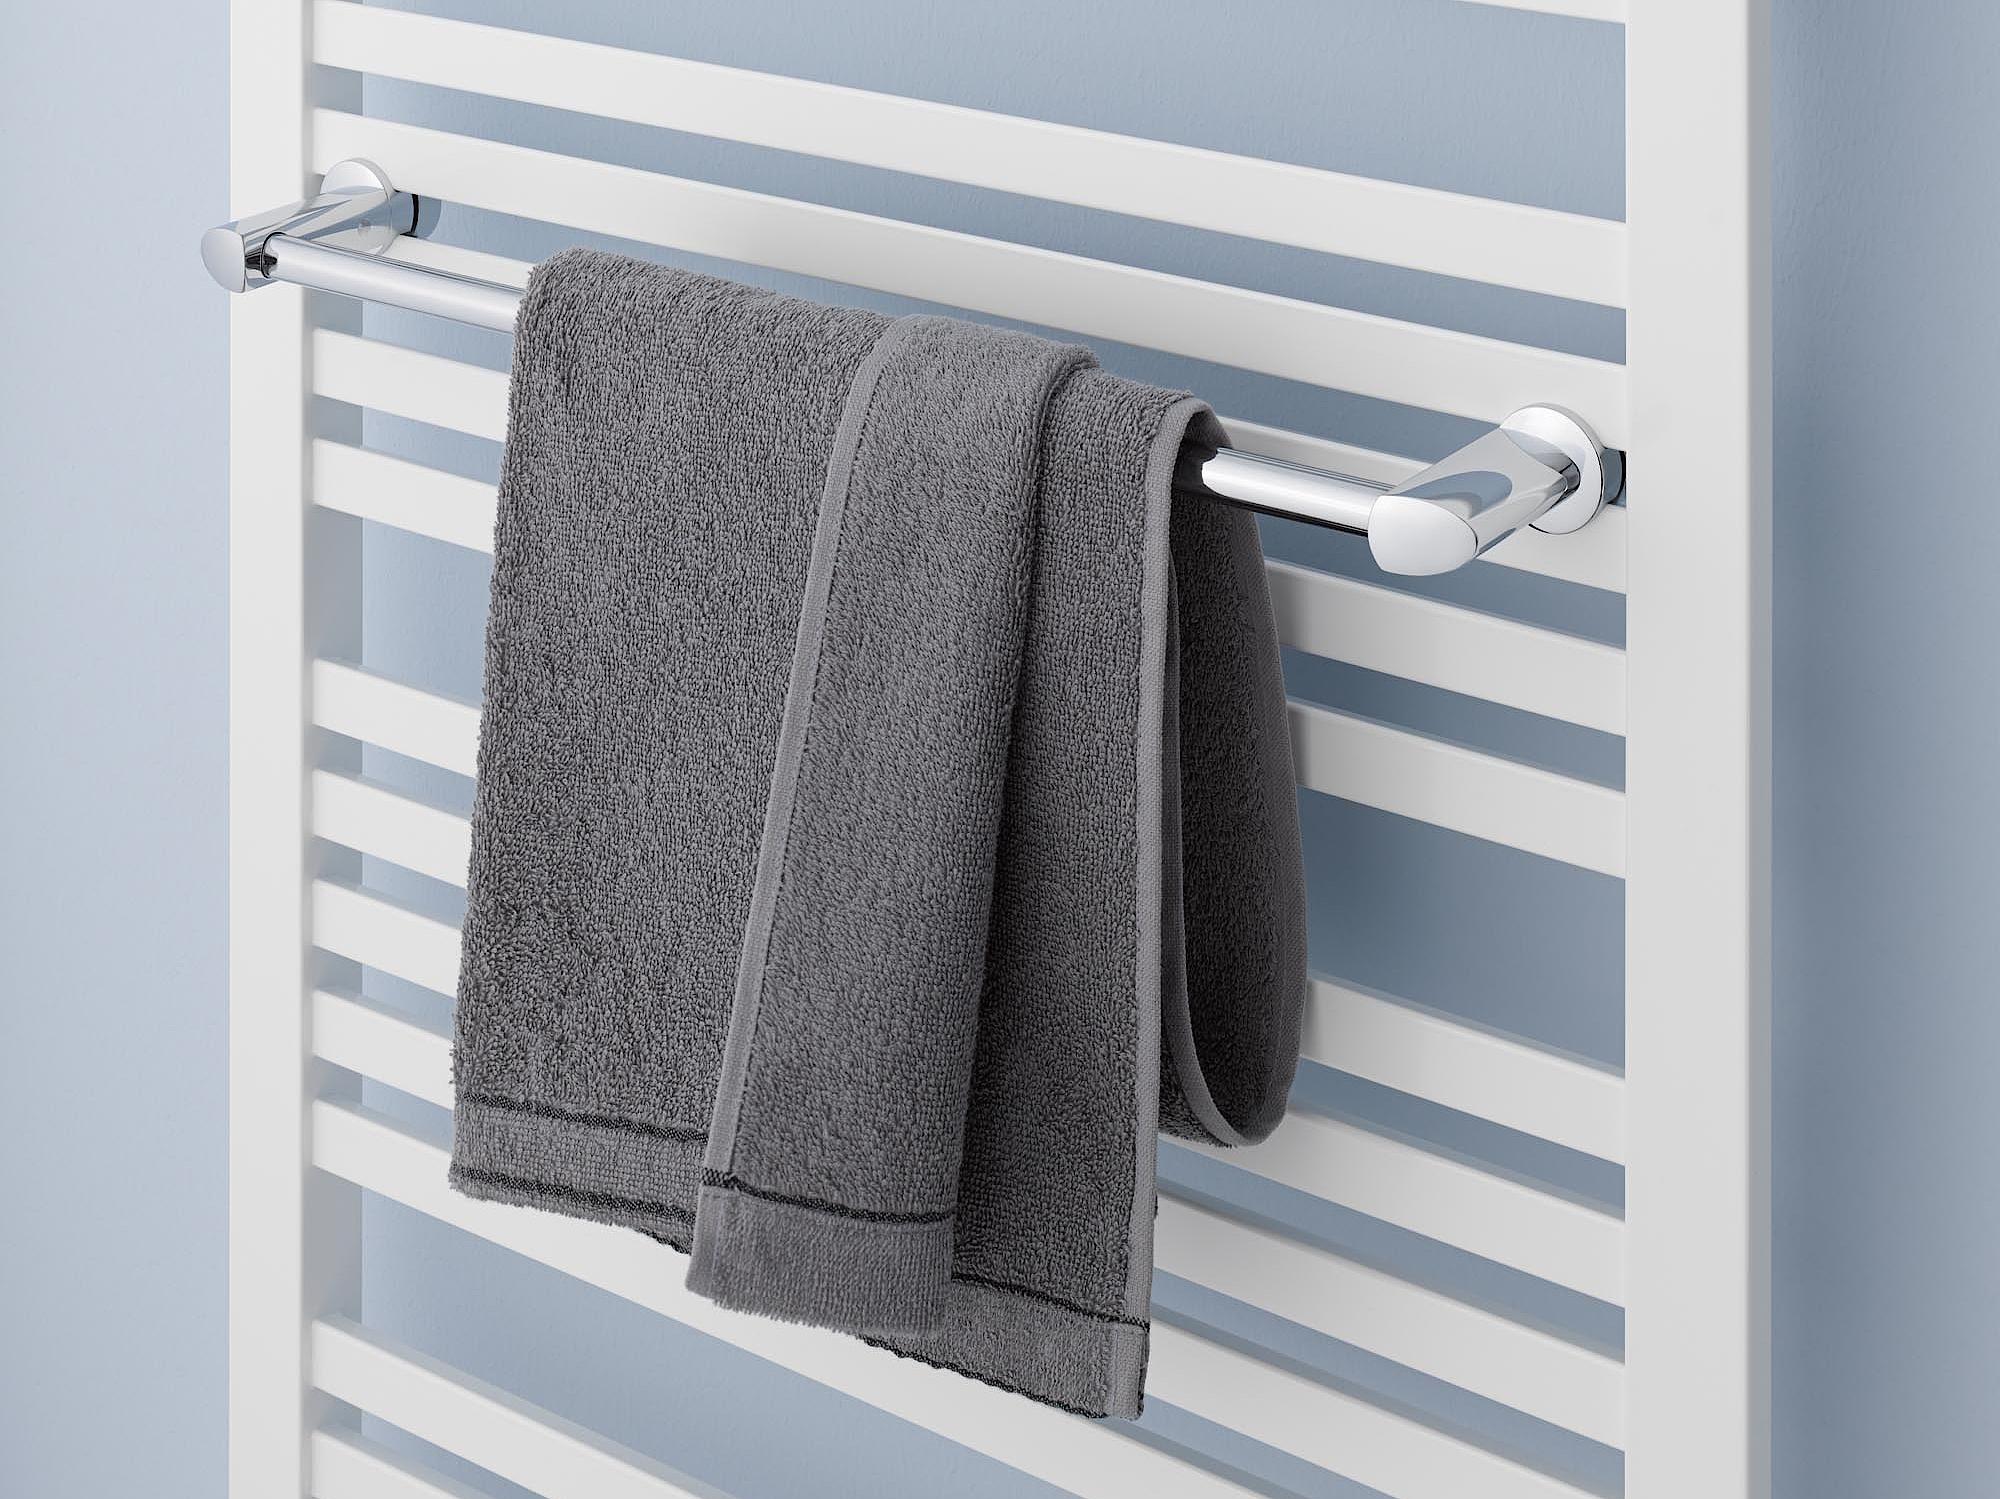 Radiatore da bagno e di design Kermi Geneo quadris staffa per asciugamani.